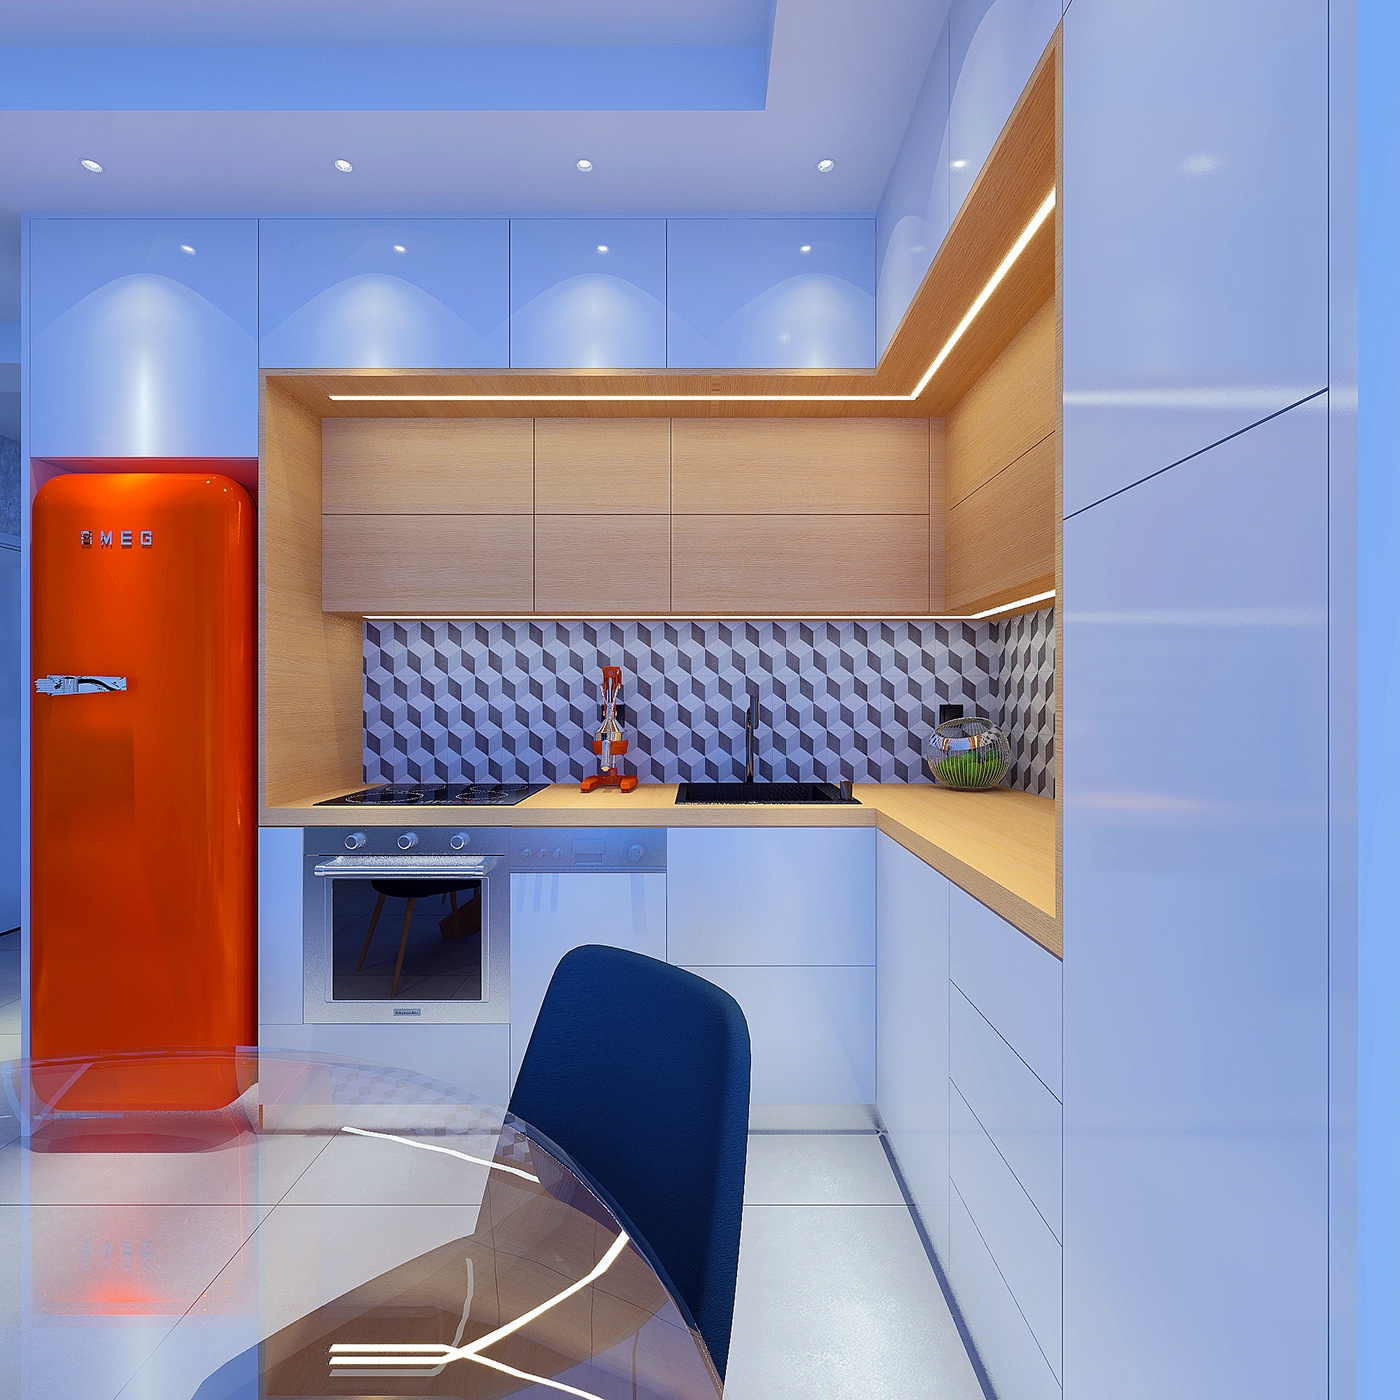 andronisinteriors CGI architecture Render visualization interior design  3D modern apartment design Interior